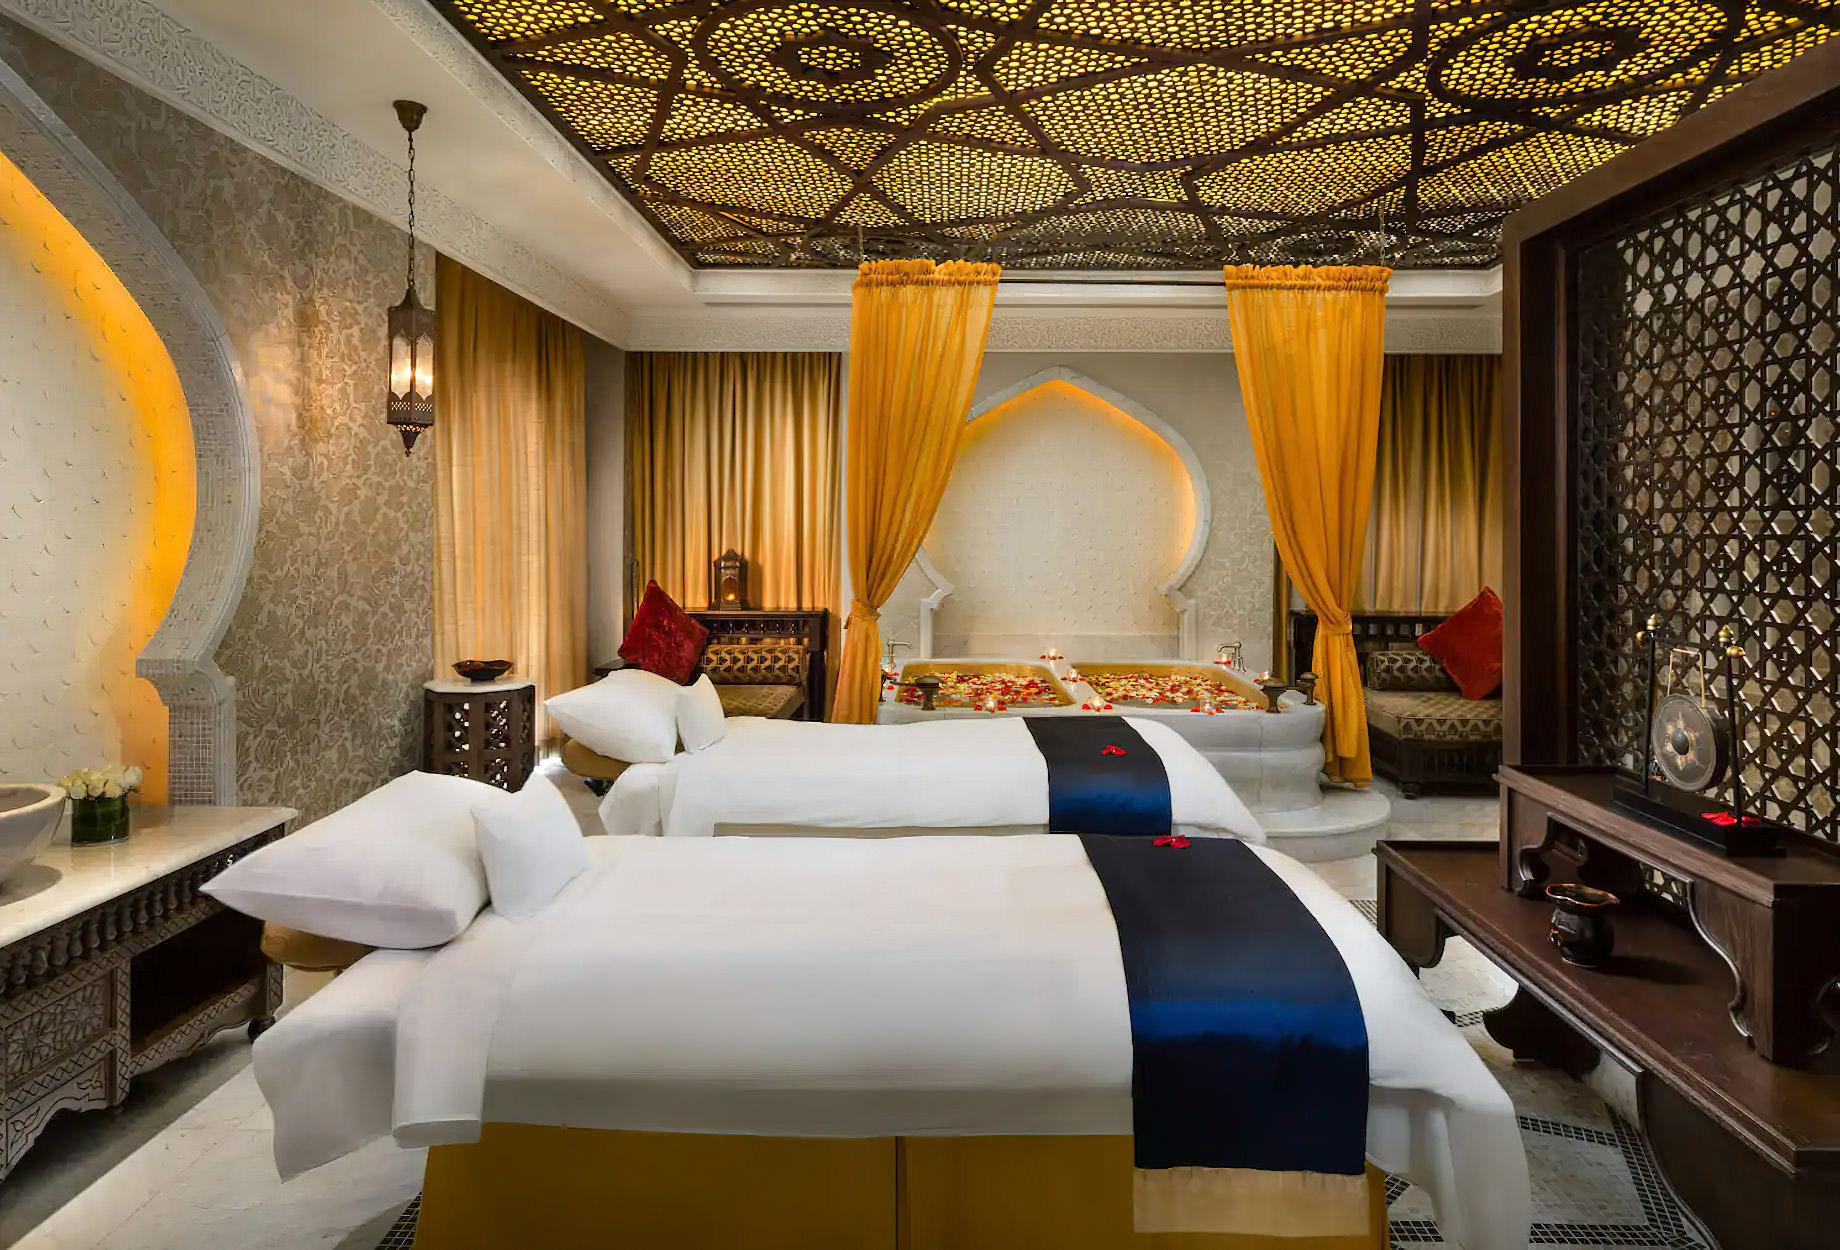 Emirates Palace Abu Dhabi Hotel – Abu Dhabi, UAE – Spa Treatment Room